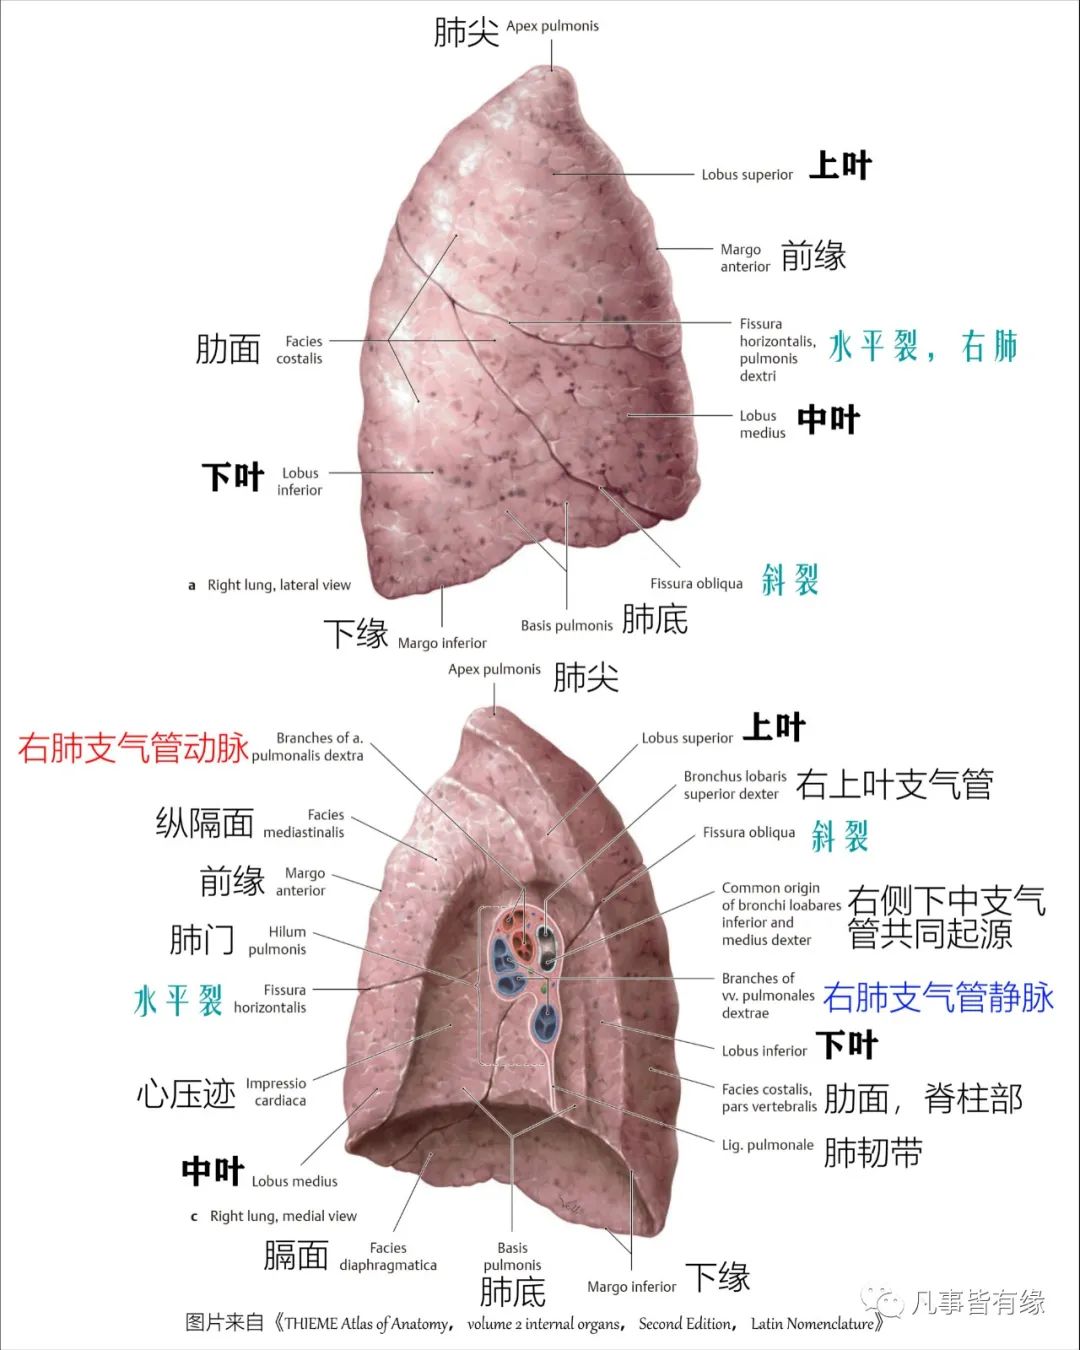 从腋中线上的斜裂开始,水平向前延伸至肺前缘,将右肺分成上方的上叶和